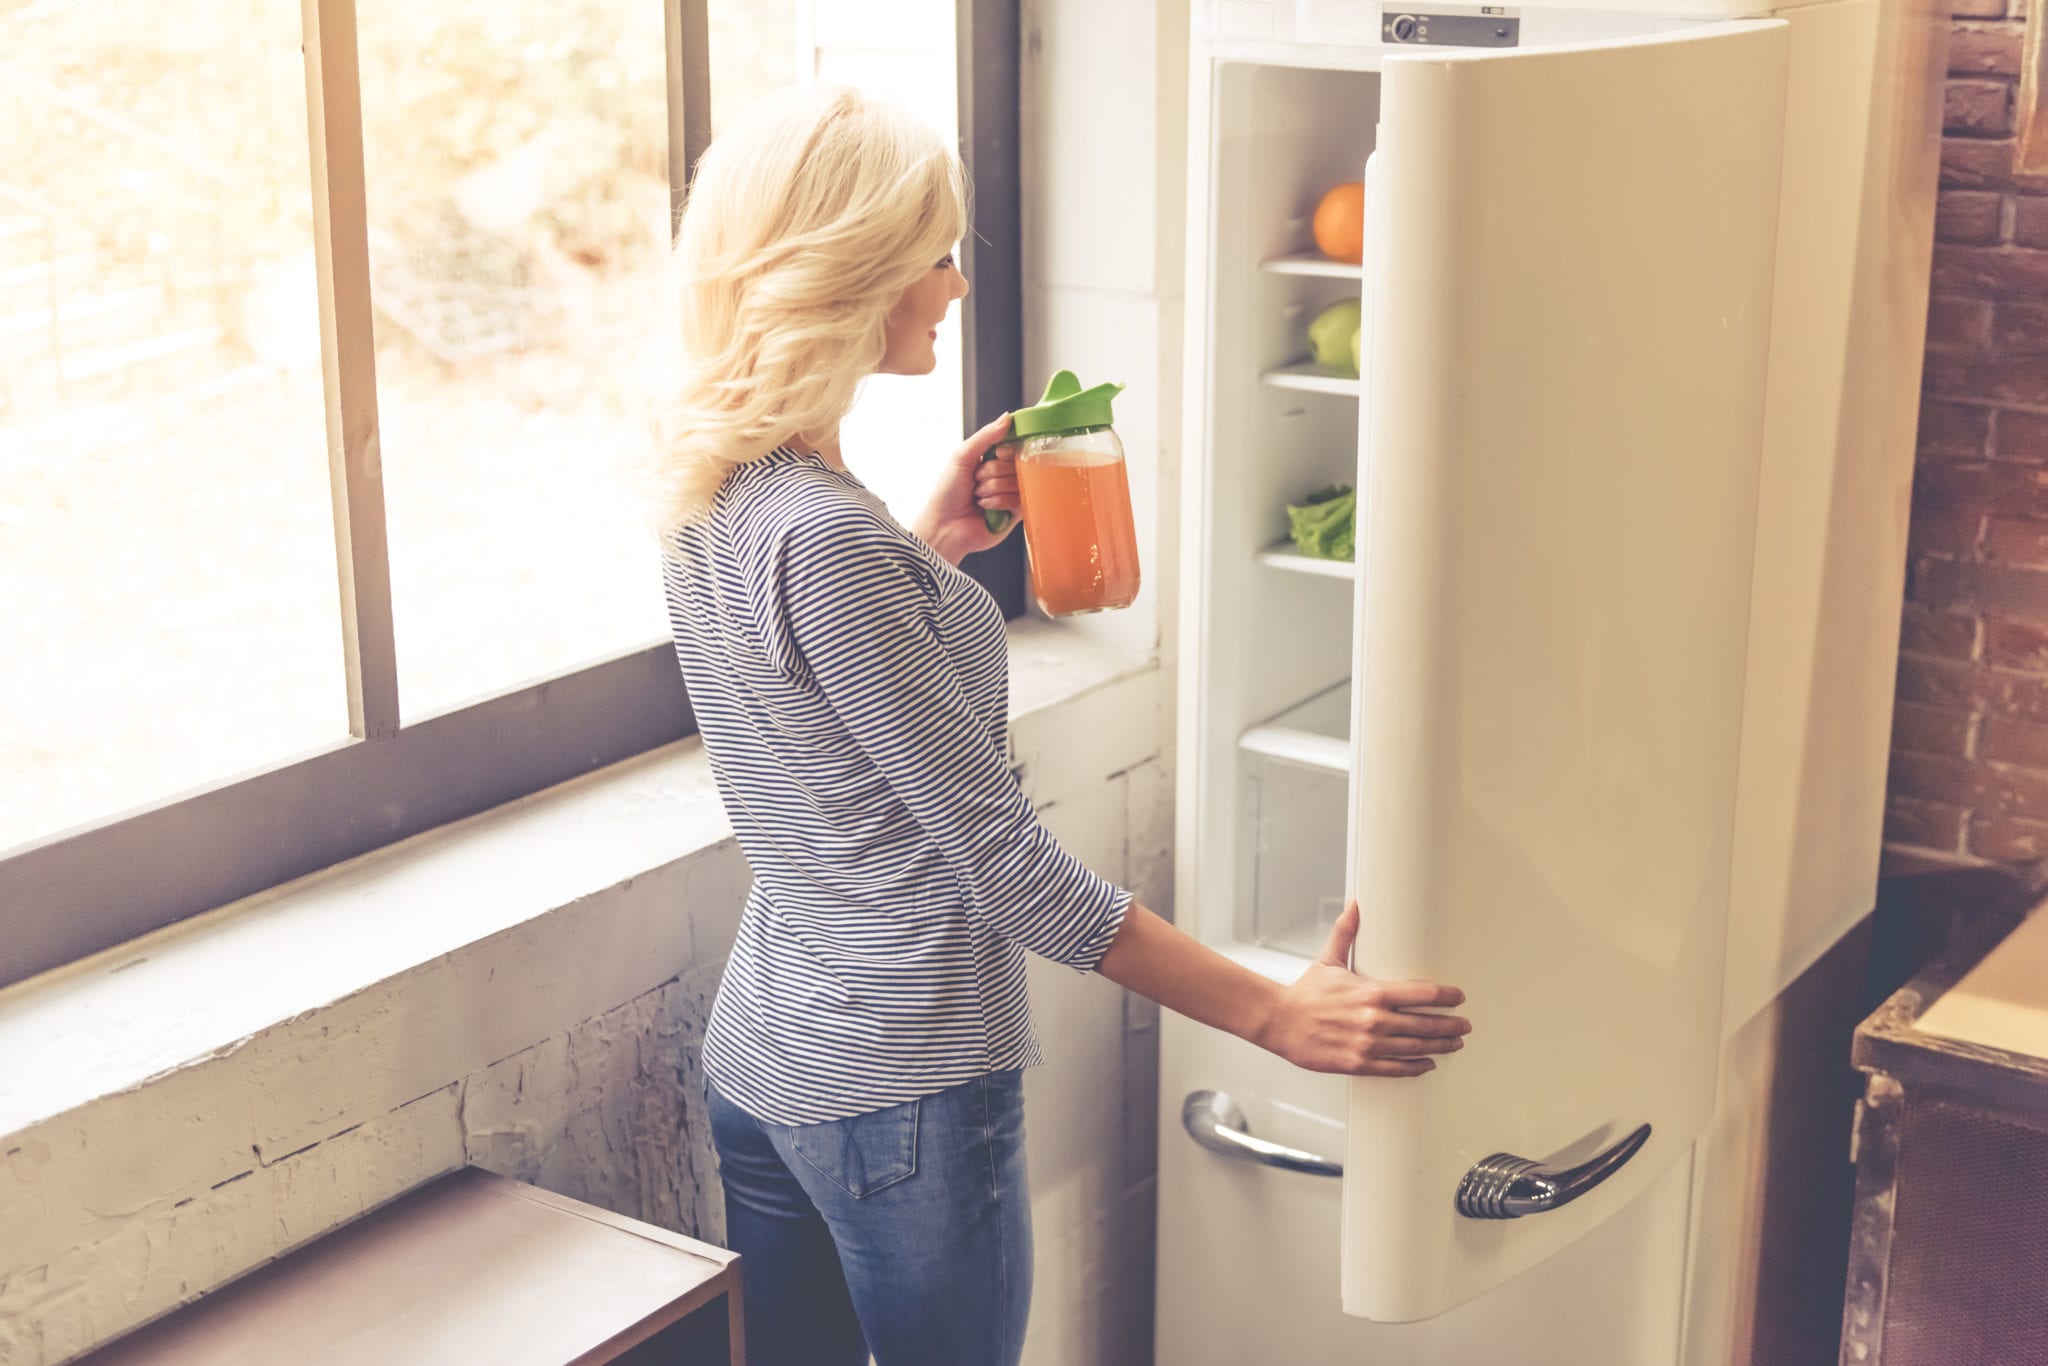 Detox your fridge for 2017